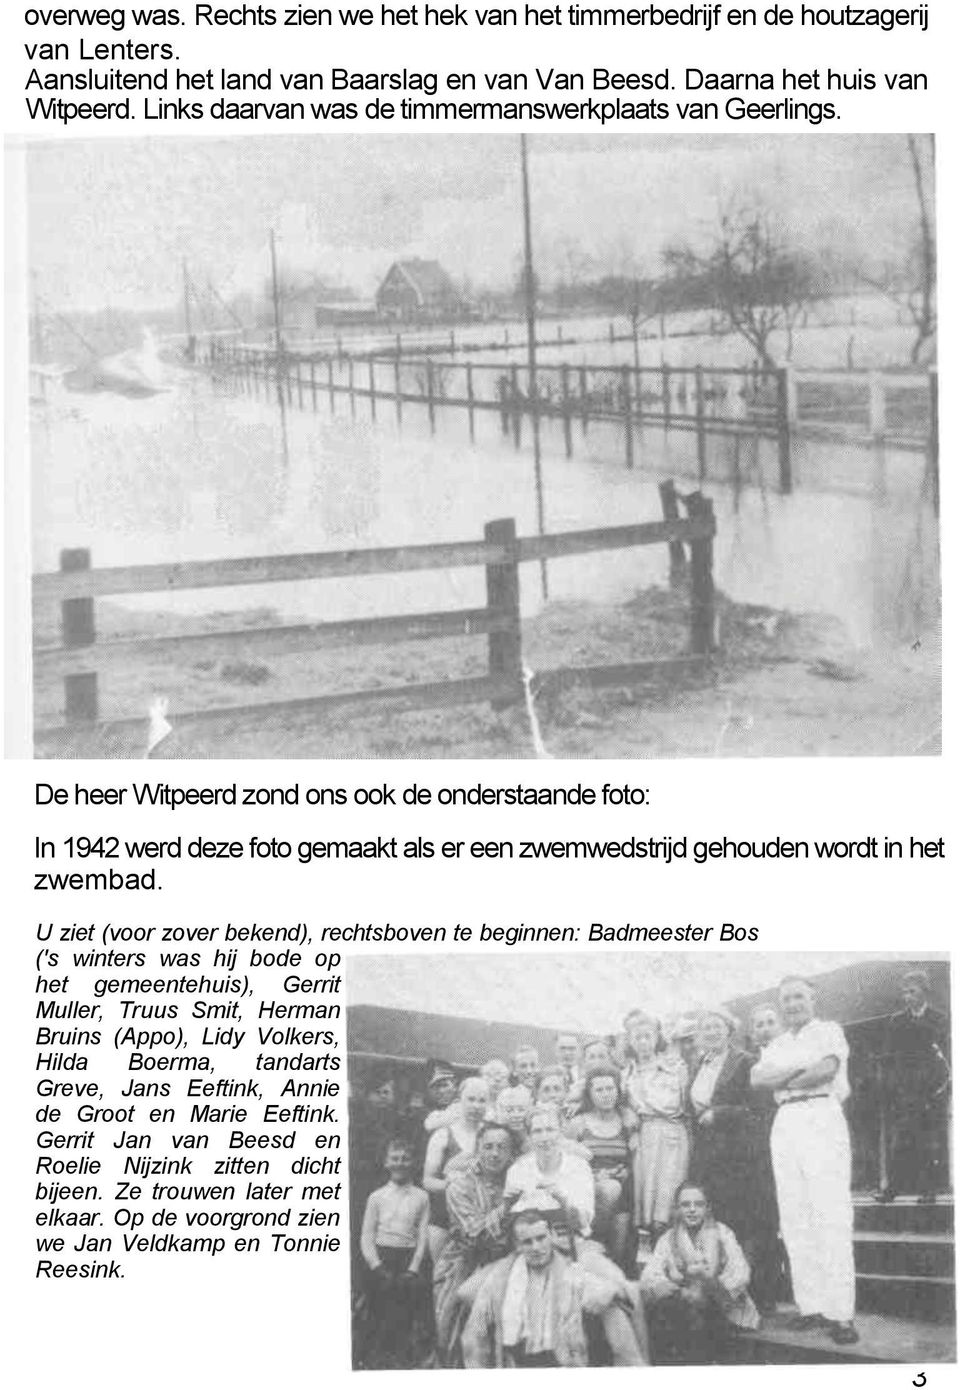 De heer Witpeerd zond ons ook de onderstaande foto: In 1942 werd deze foto gemaakt als er een zwemwedstrijd gehouden wordt in het zwembad.